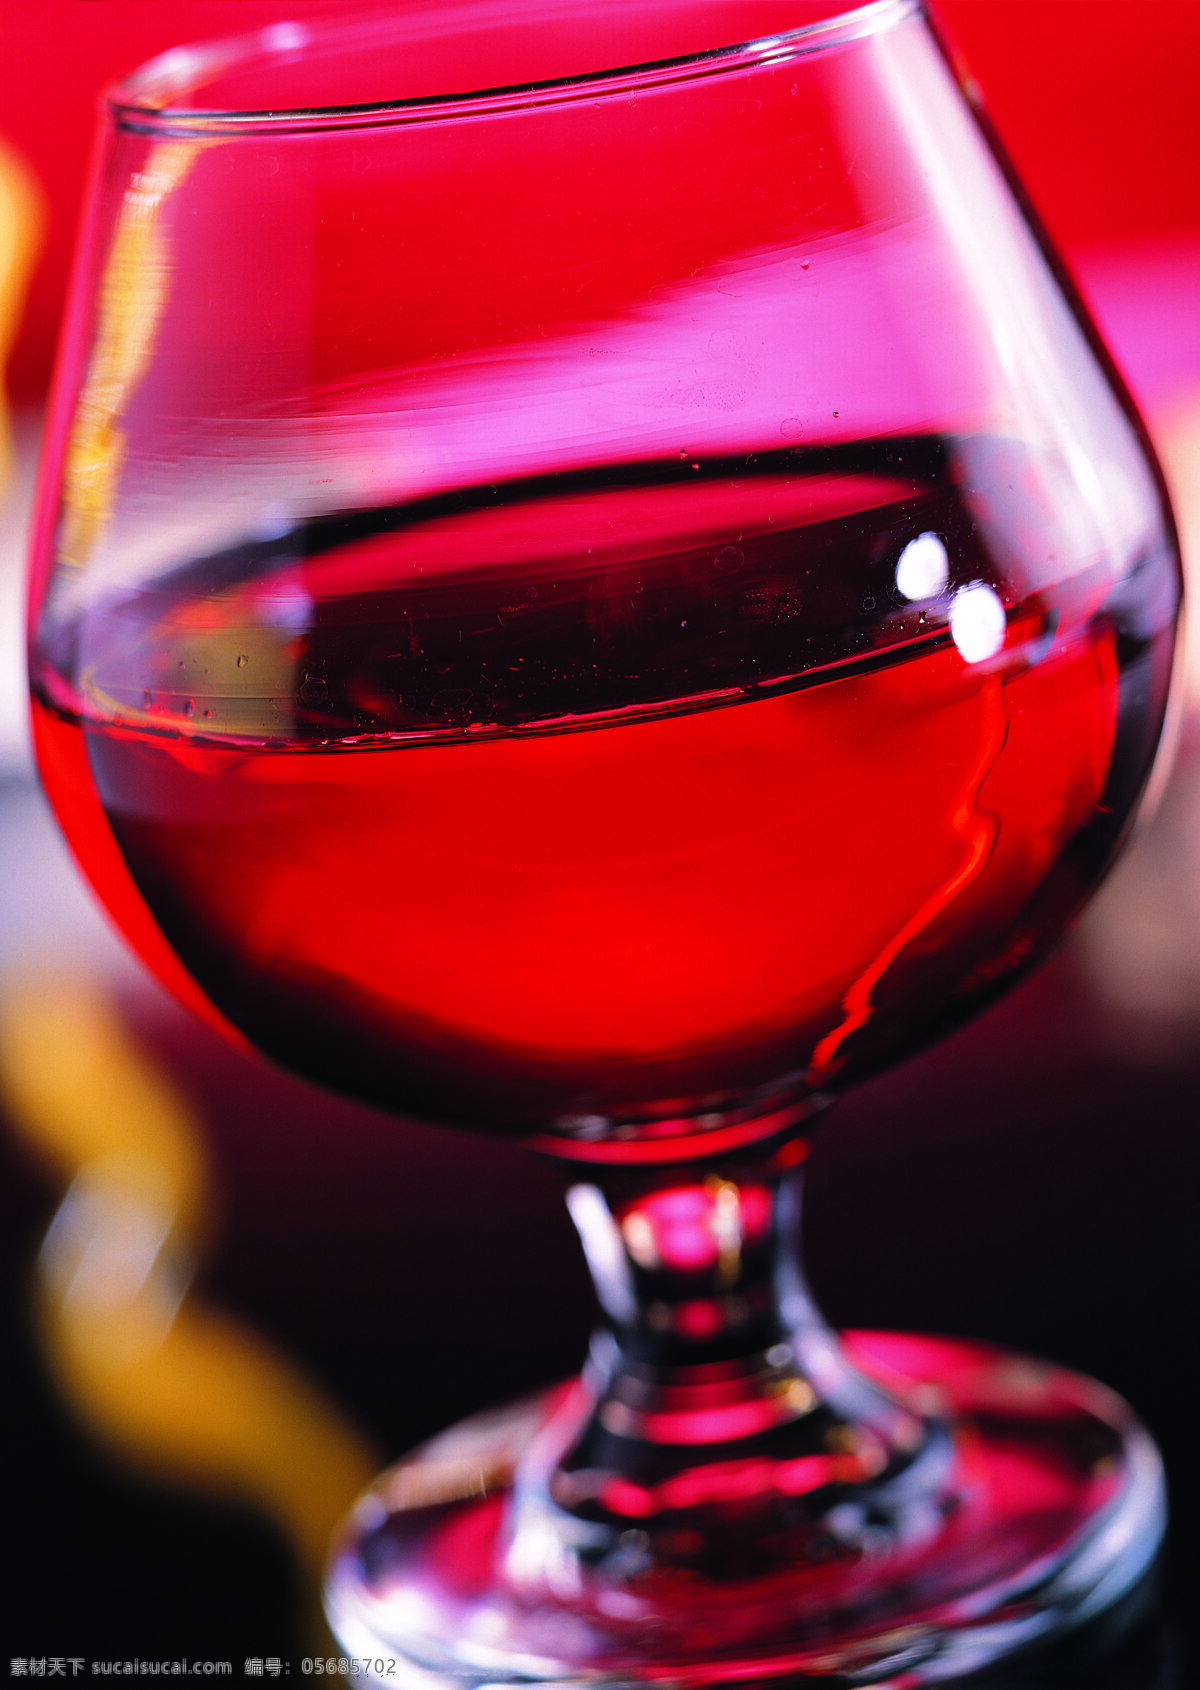 一杯 红酒 饮料 红色 玻璃杯 高交杯 酒杯 酒会 晚会 宴会 高清图片 饮料图片 餐饮美食